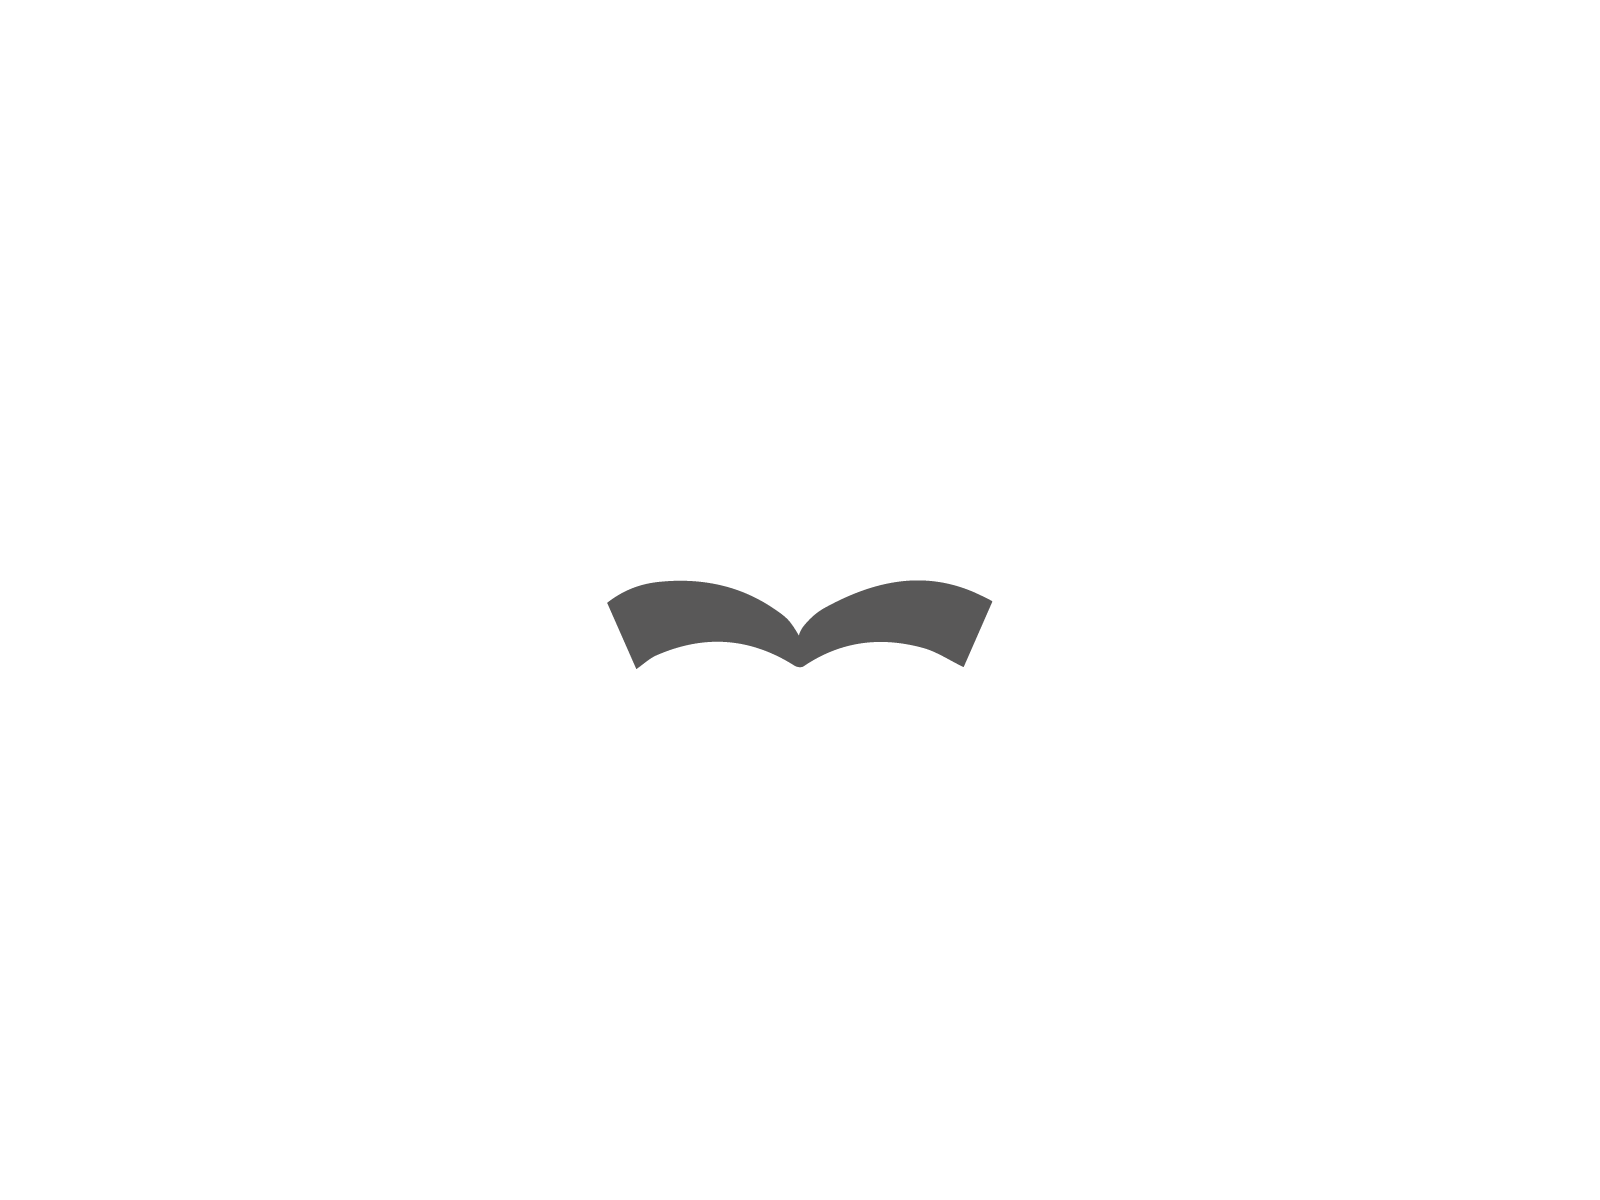 Flip book - 1 Logo a day Challenge